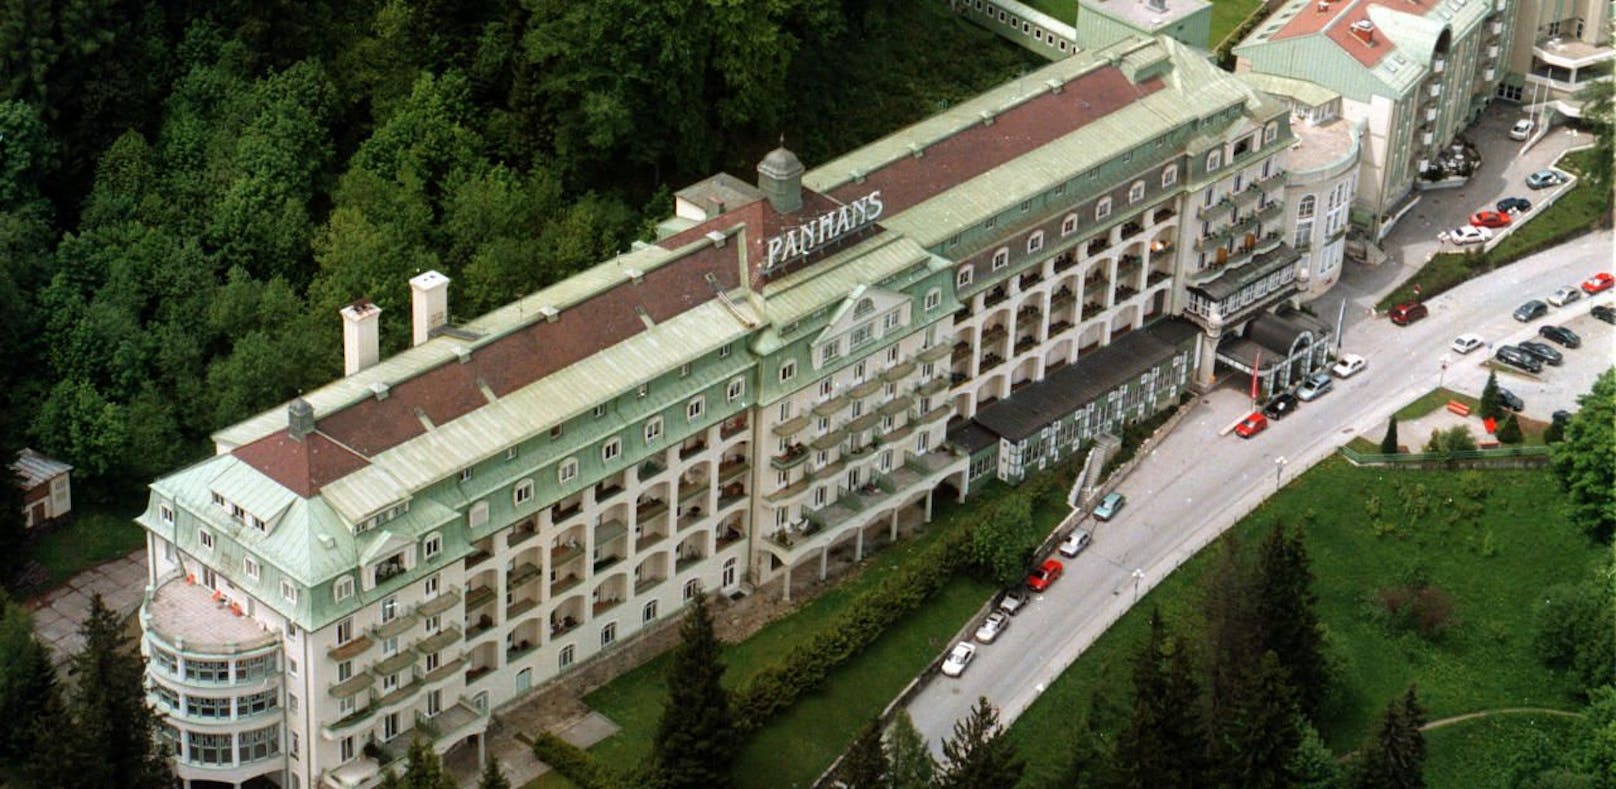 Luftbild vom Hotel Panhans am Semmering.